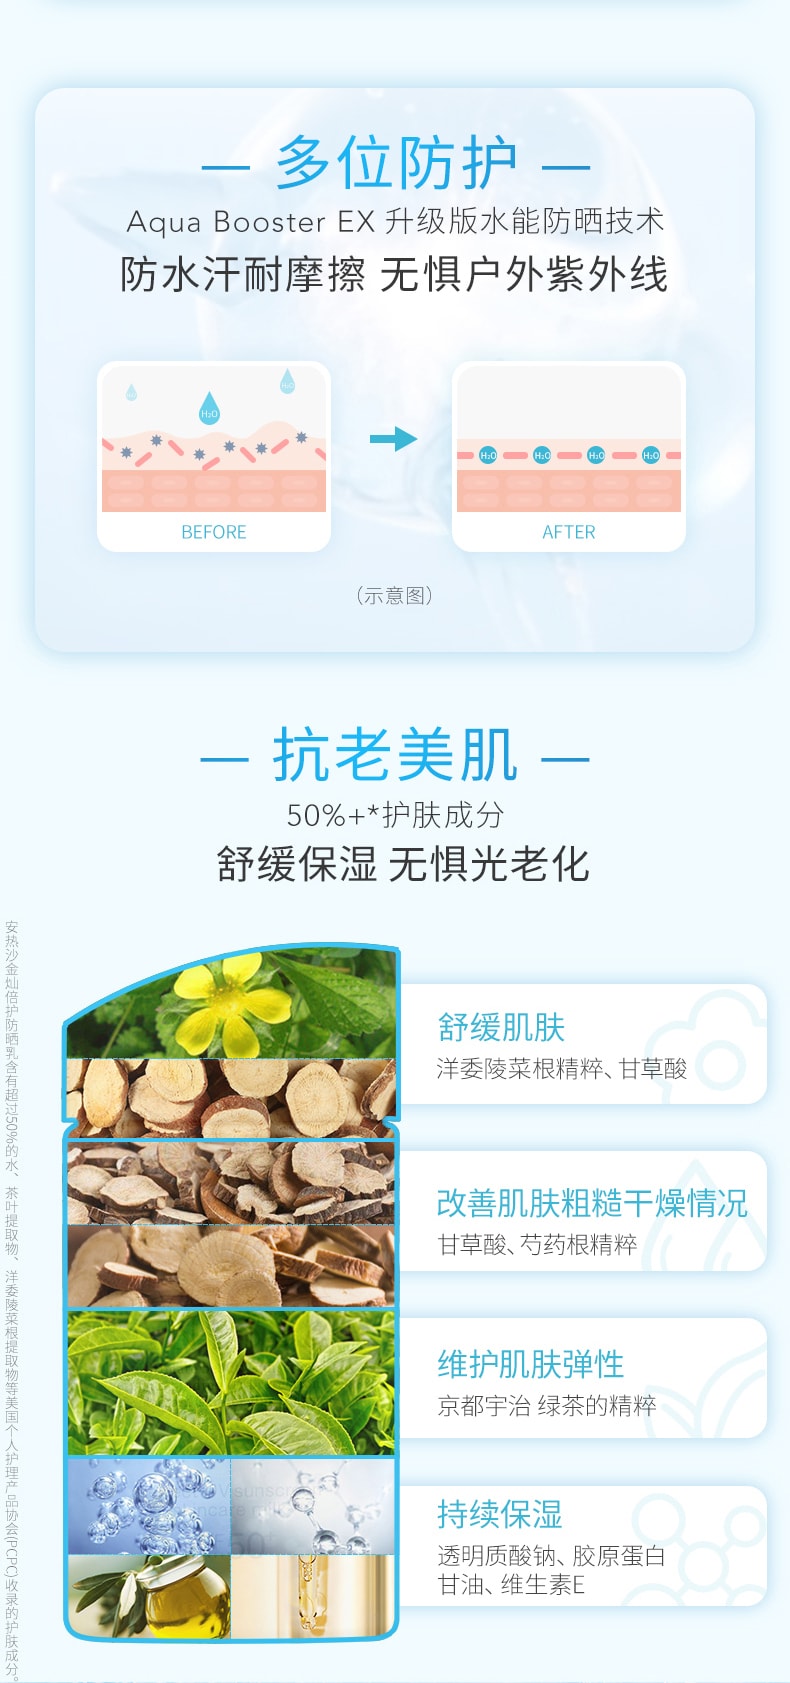 [2024 升级新版] 日本SHISEIDO资生堂 ANESSA安耐晒 UV护肤乳防晒霜 小金瓶 60ml 2/21发售